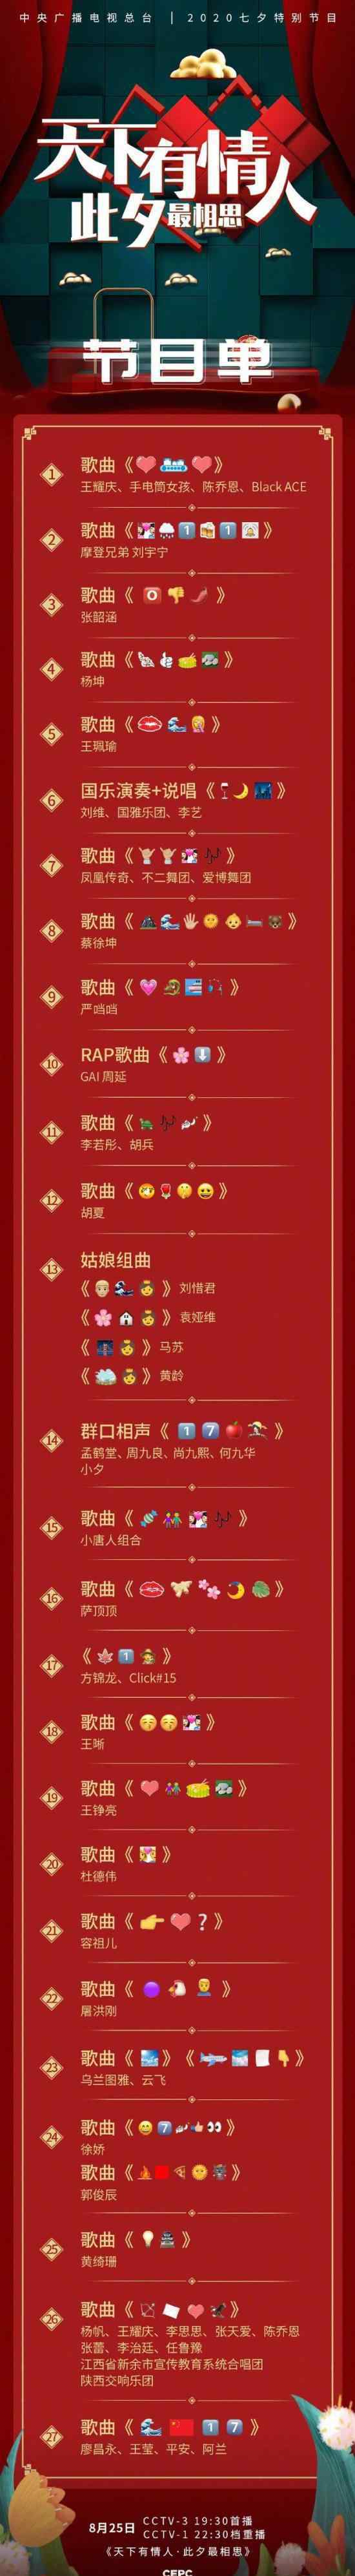 央视七夕晚会emoji节目单 你最期待哪个节目